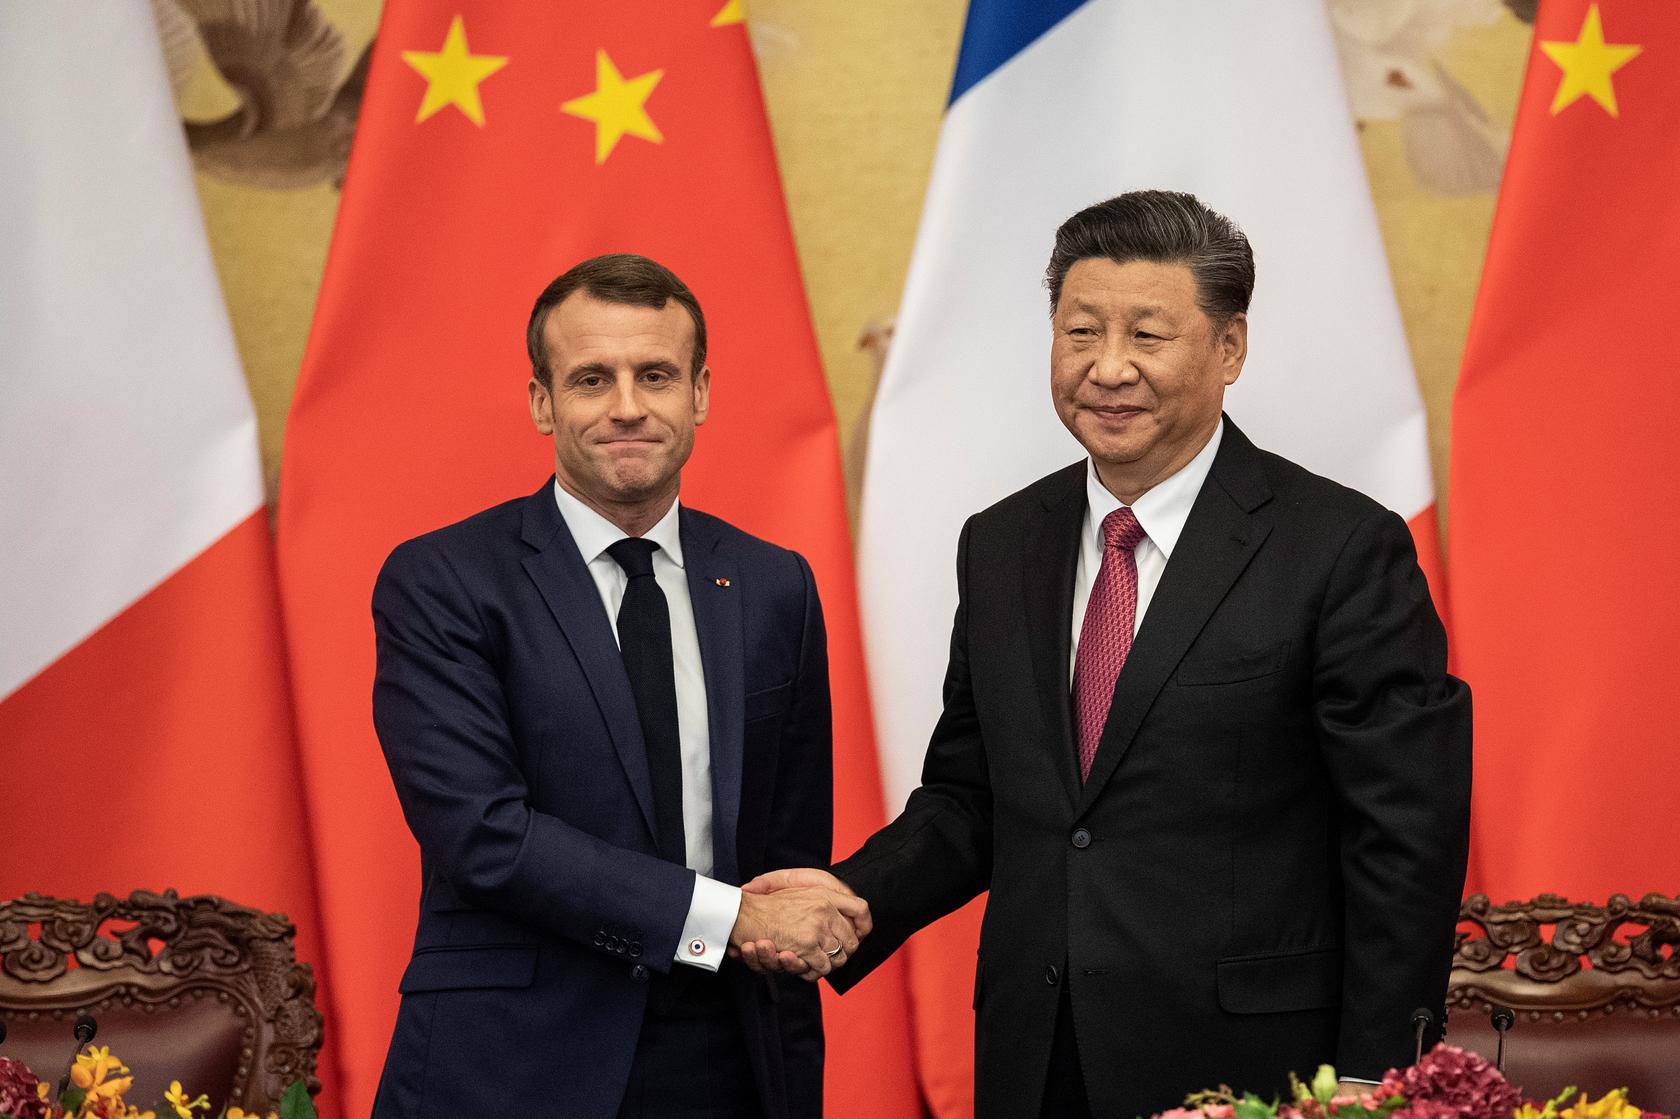 Франция, вслед за Англией, решила вернуть былое величие, только путем ссоры с Китаем?1